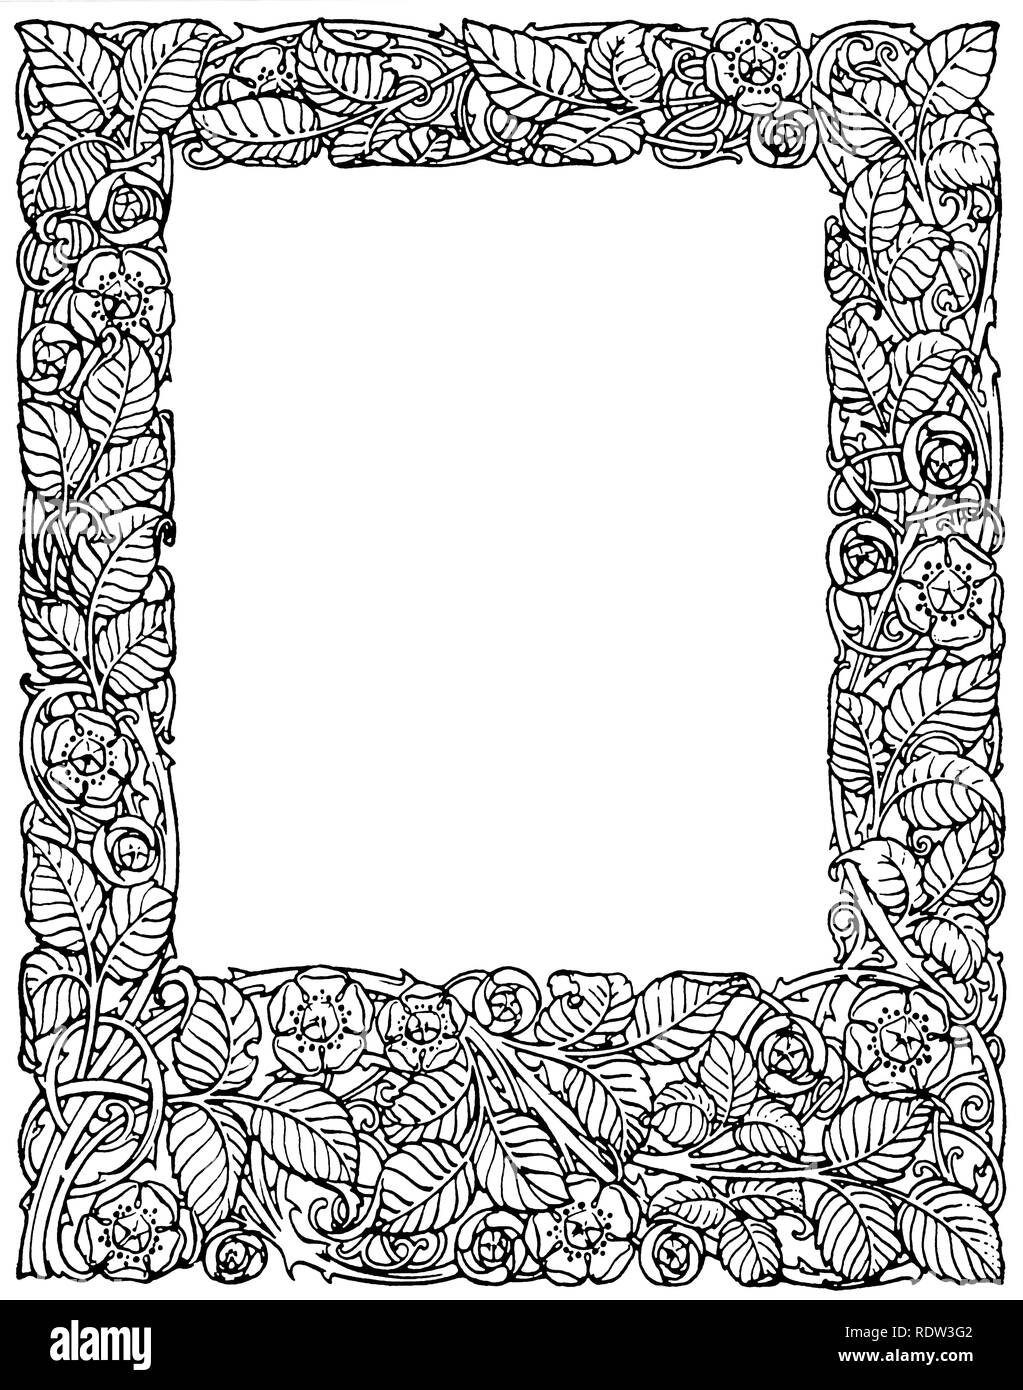 Large bordure pleine page avec roses et feuilles Banque D'Images